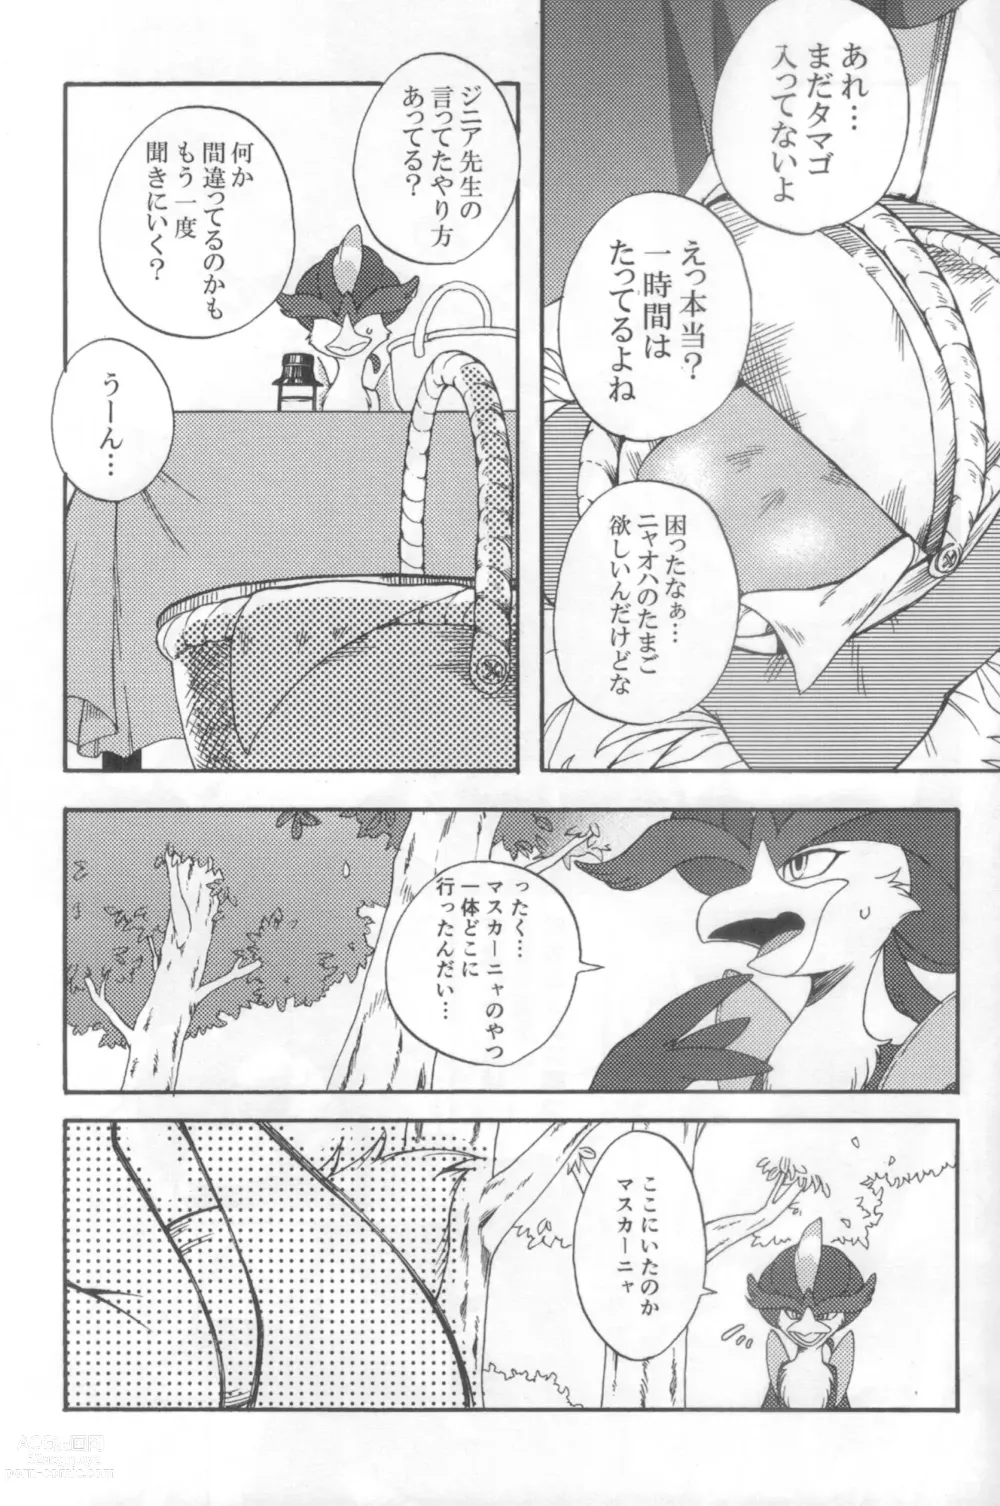 Page 4 of doujinshi Harama Sare Nyanko